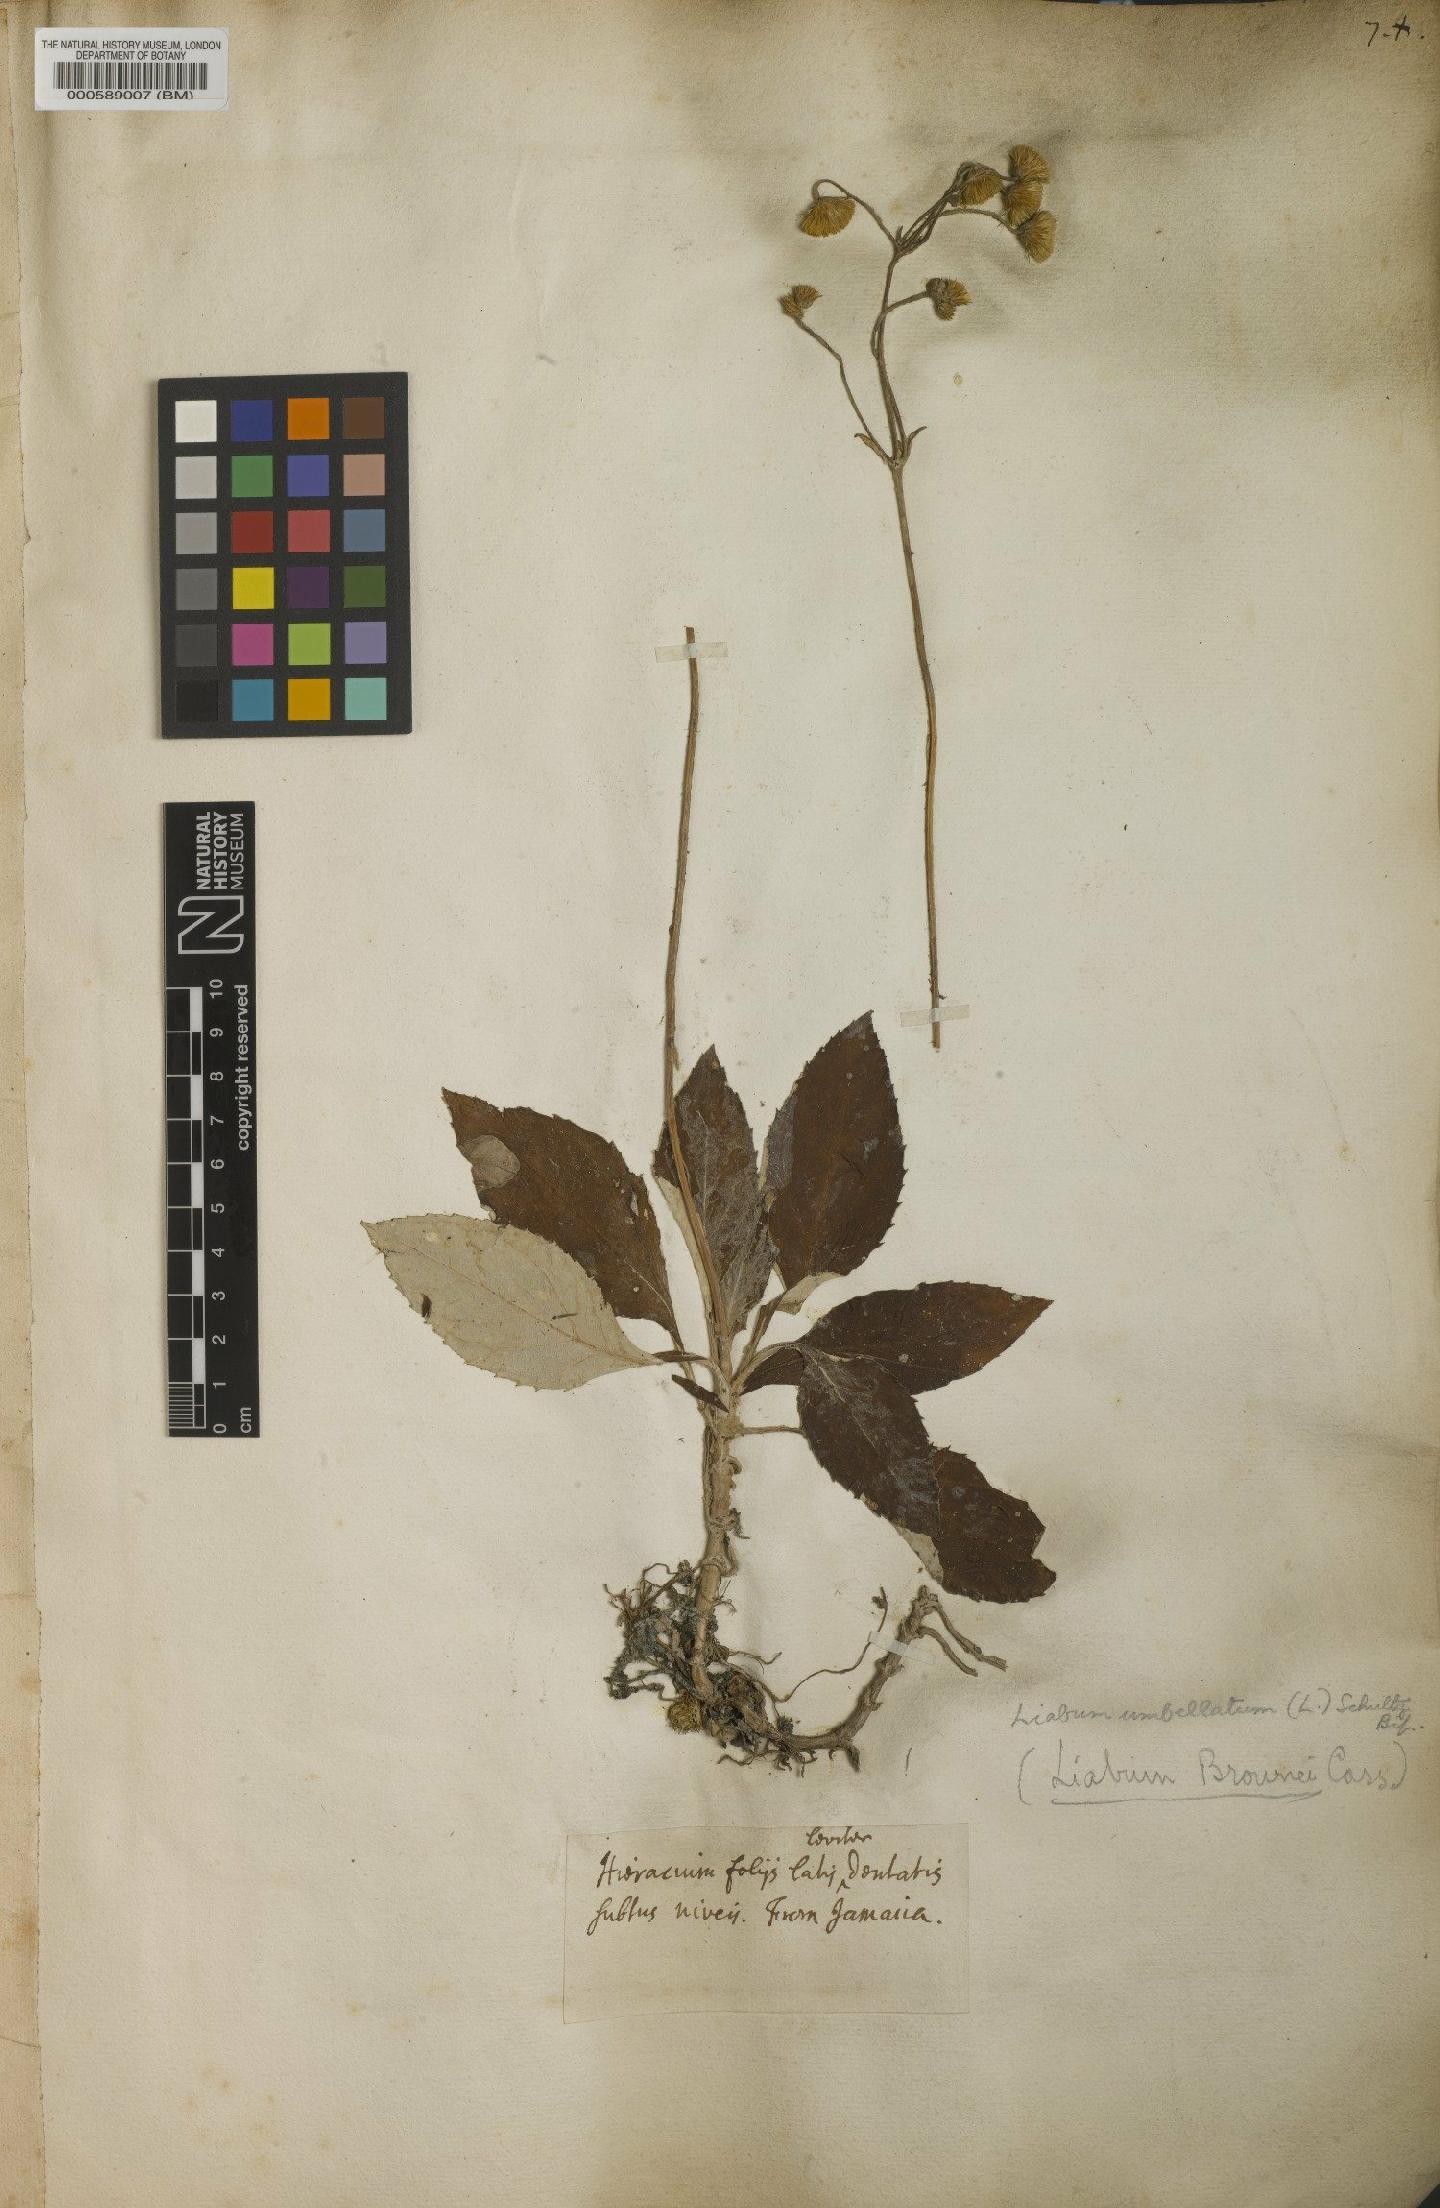 To NHMUK collection (Amellus umbellatus L.; NHMUK:ecatalogue:4707135)